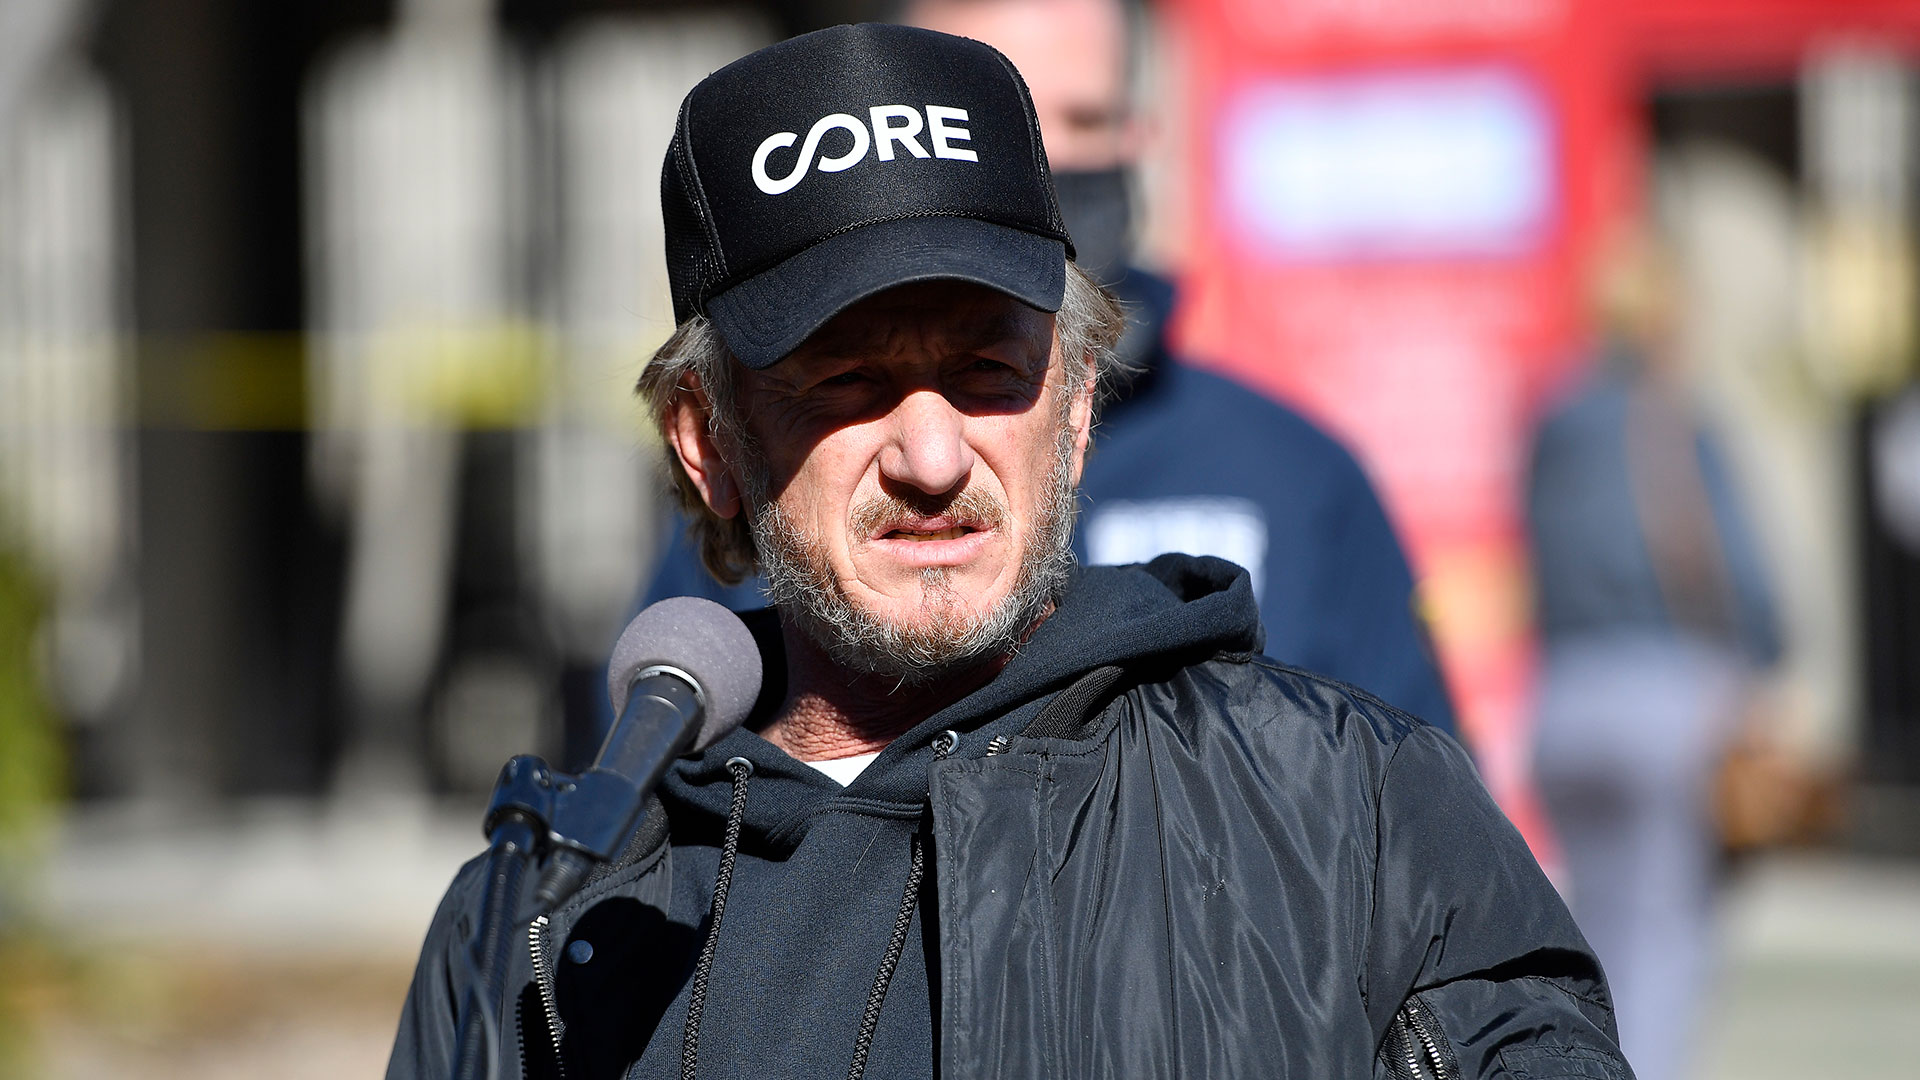 Sean Penn luchó contra el coronavirus con pruebas gratuitas en zonas más vulnerables (Getty Images)